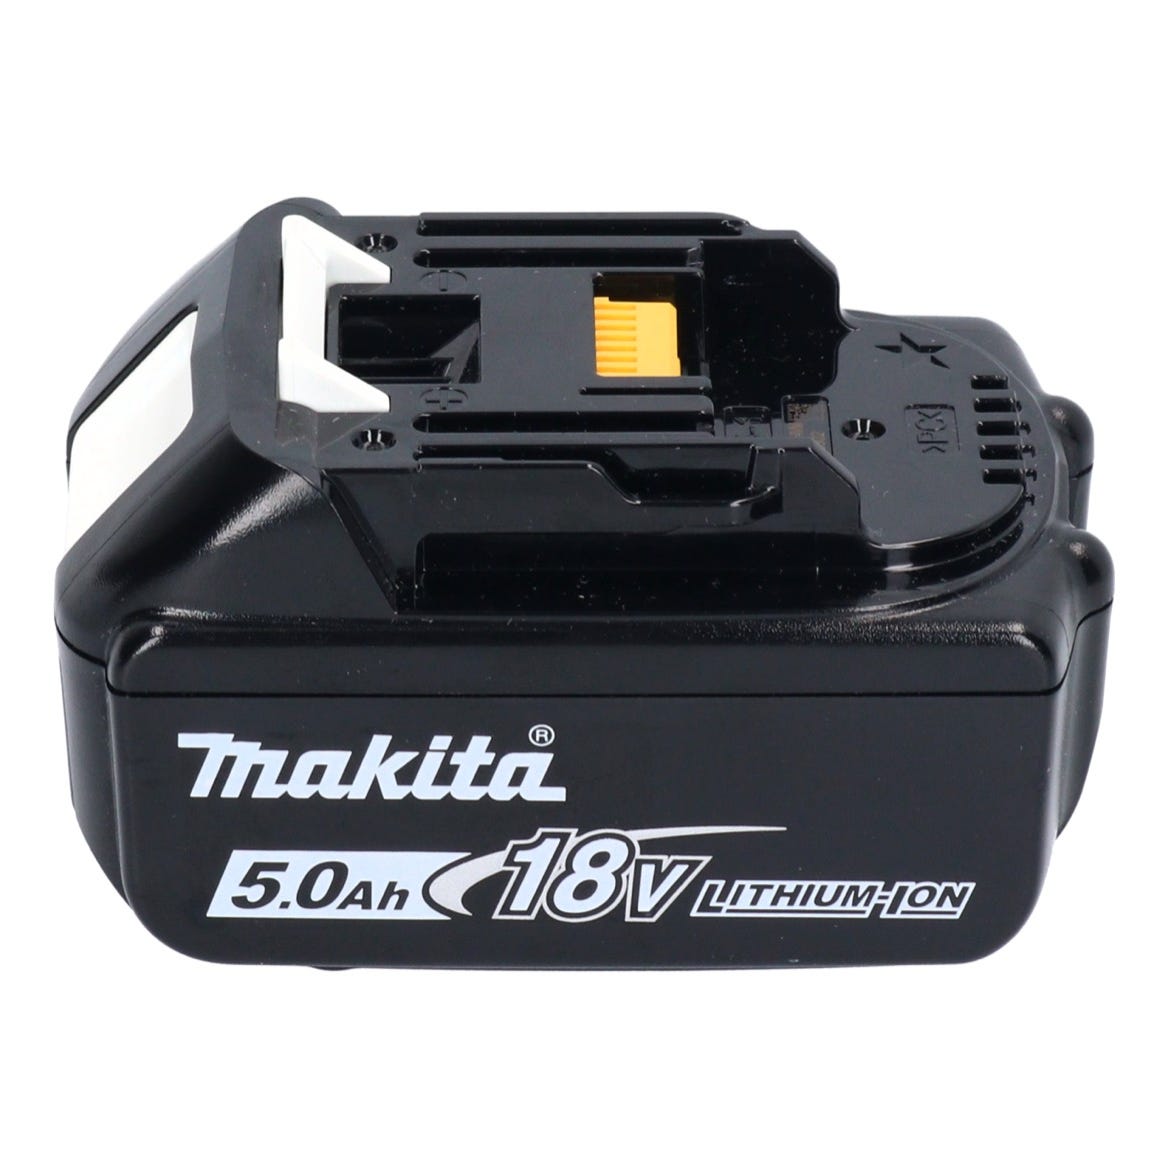 Makita DJS 200 T1 Cisaille à tôle sans fil 18 V 2,0 mm Brushless + 1x batterie 5,0 Ah - sans chargeur 2